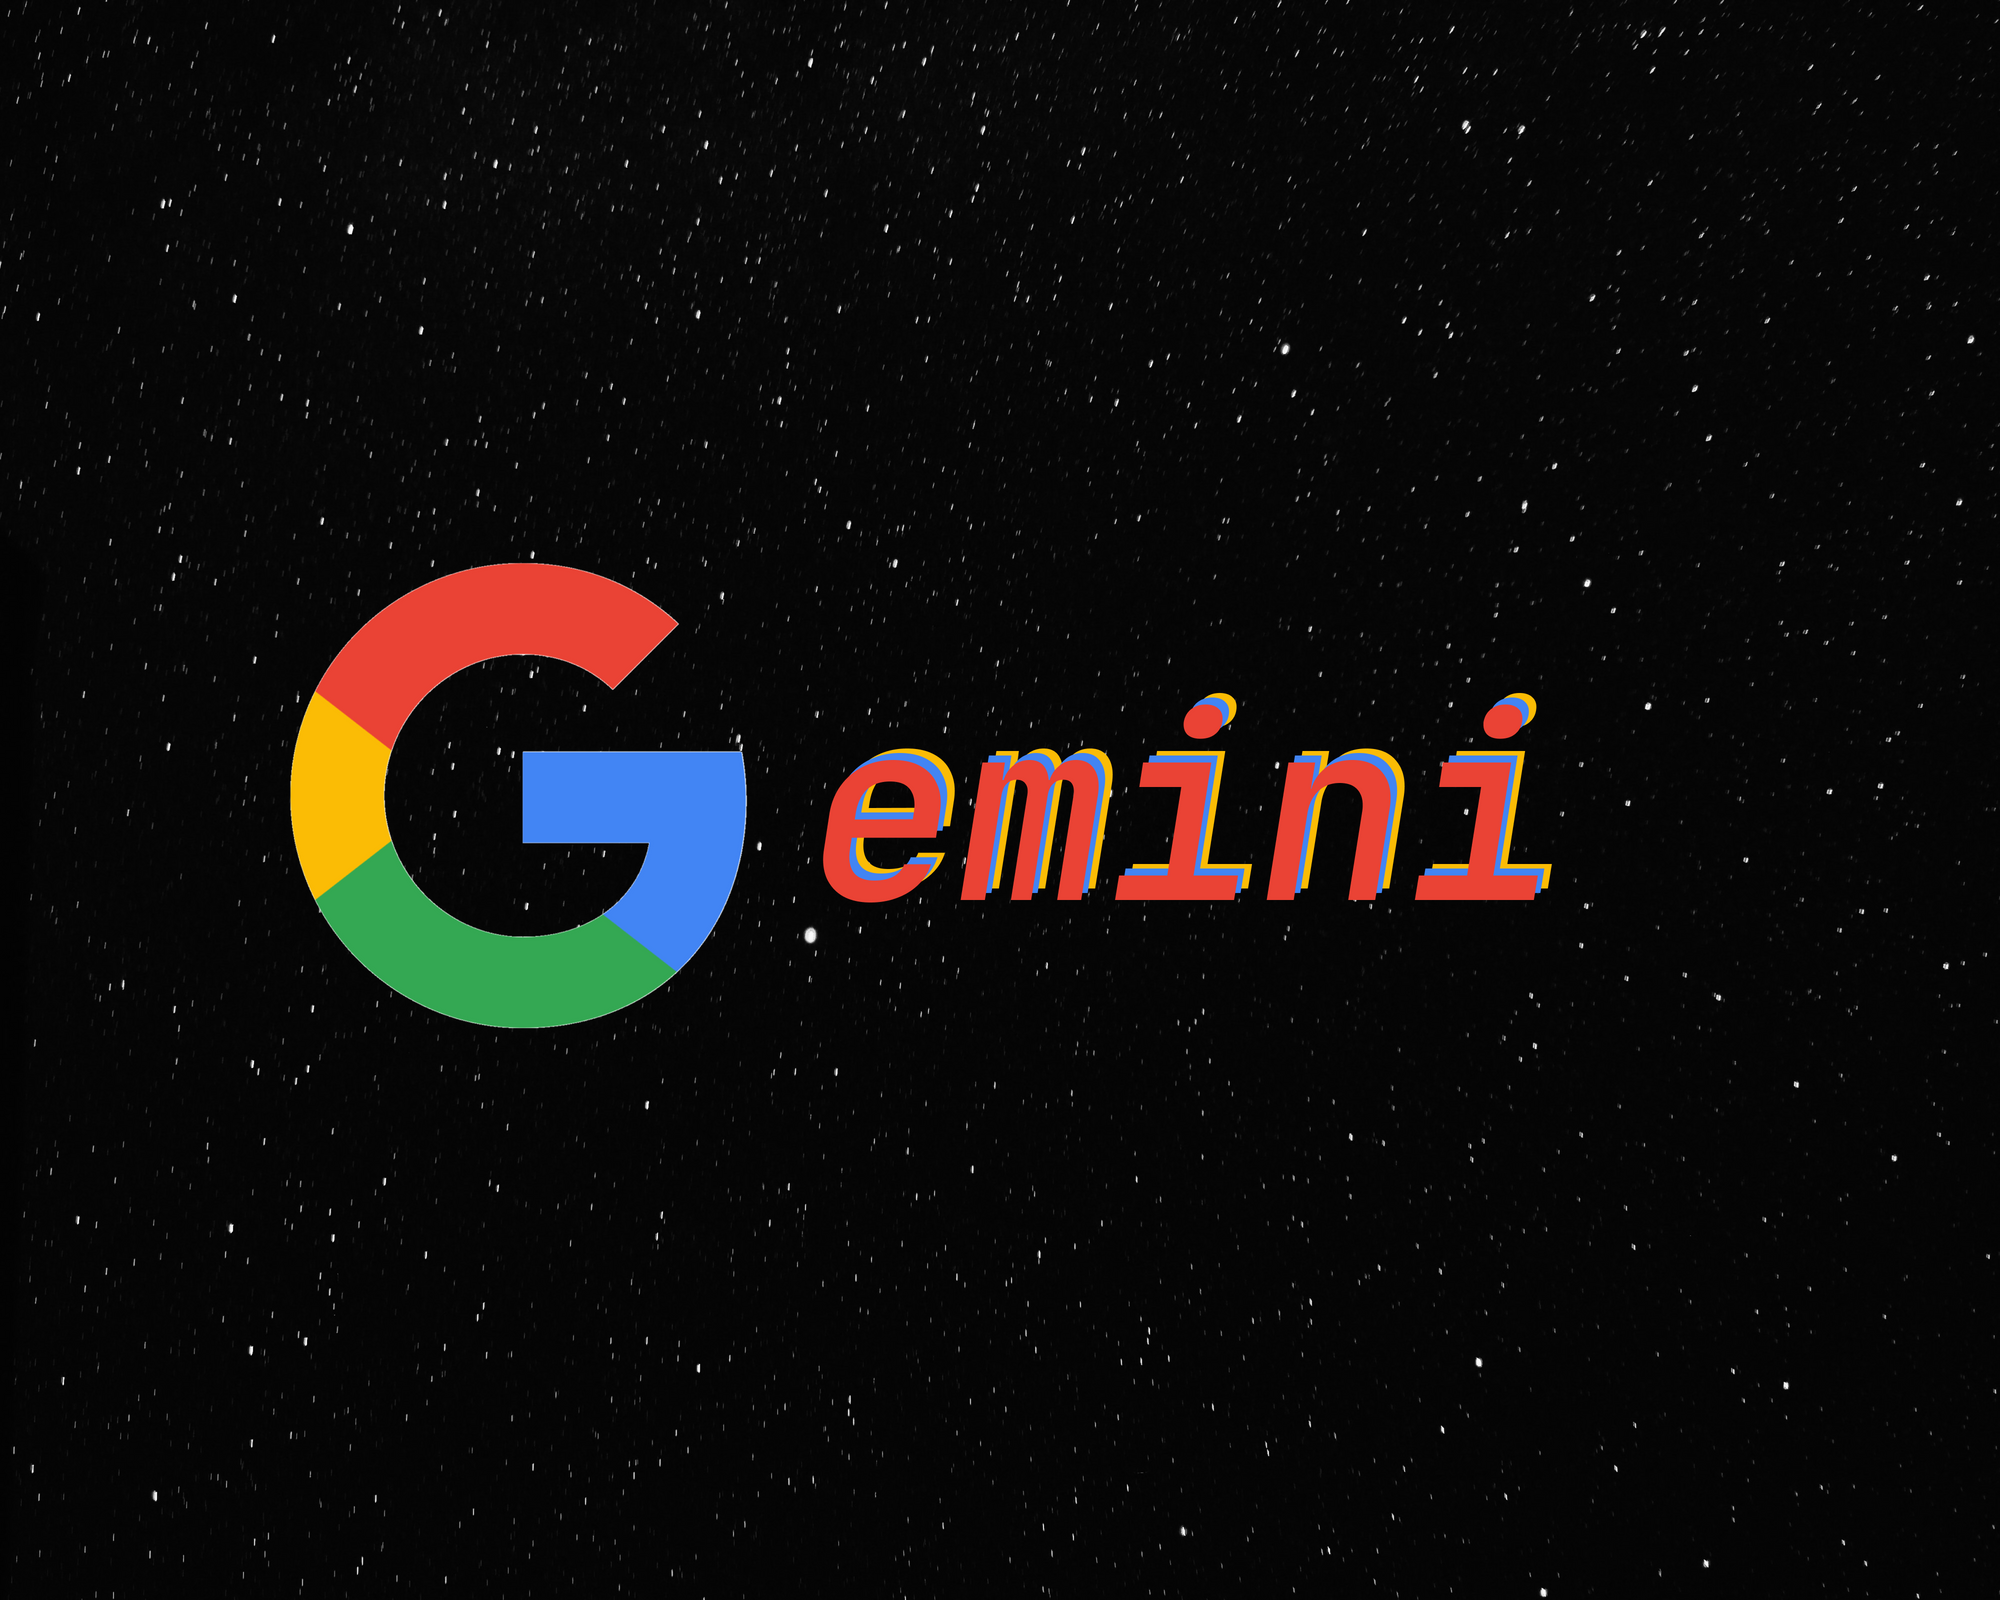 اکانت Gemini